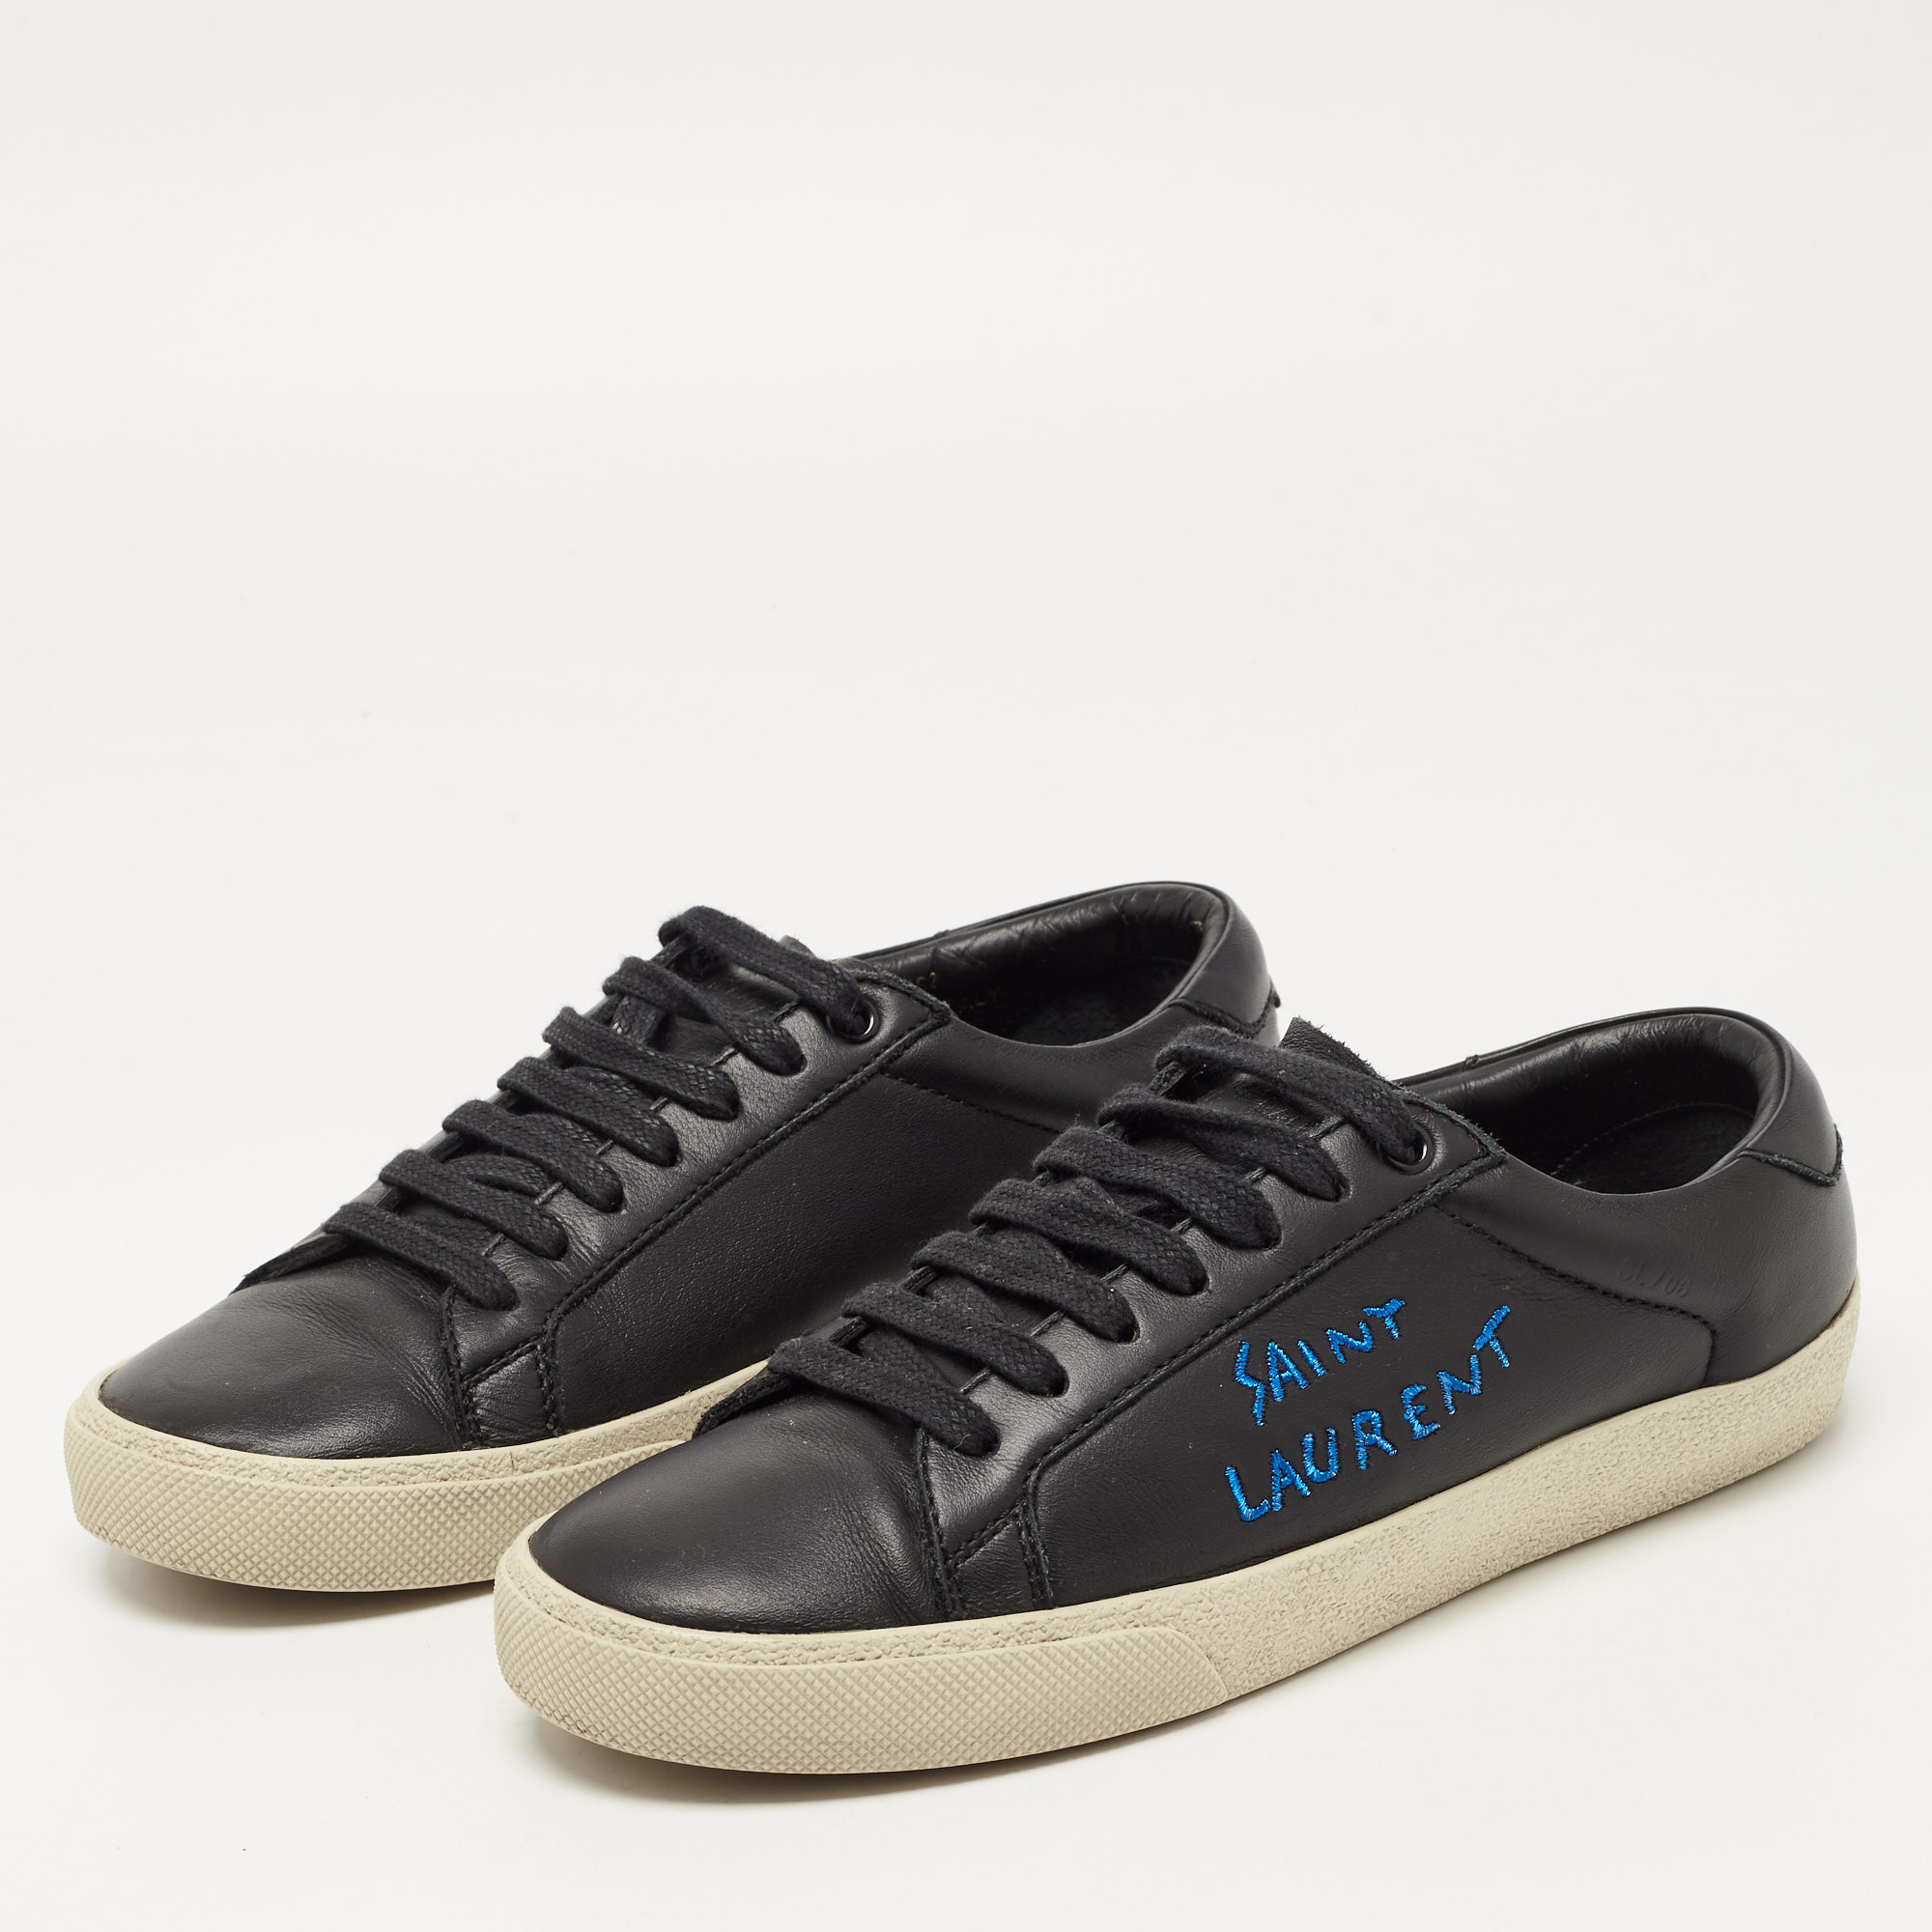 

Saint Laurent Black Leather Court Classic SL/06 Sneakers Size